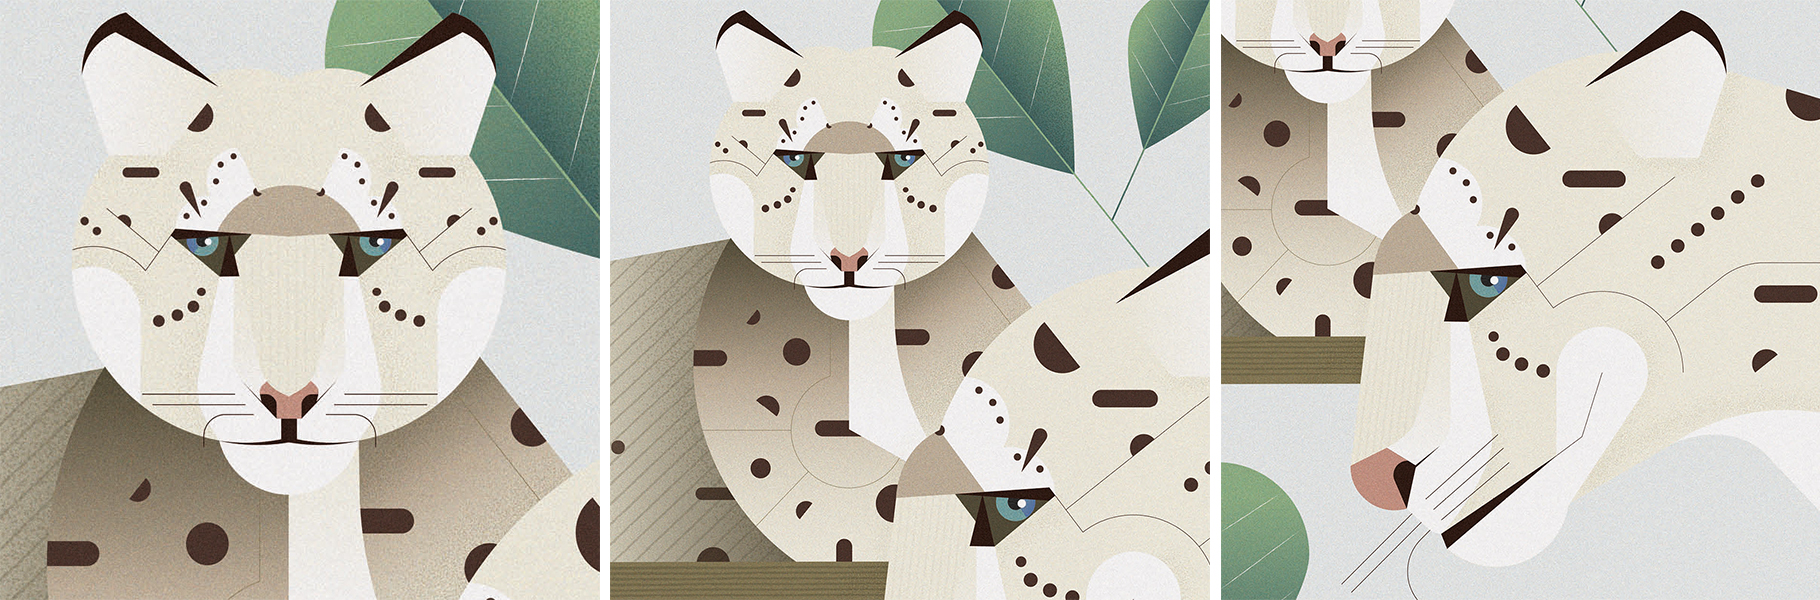 Illustrazione ghepardo delle nevi